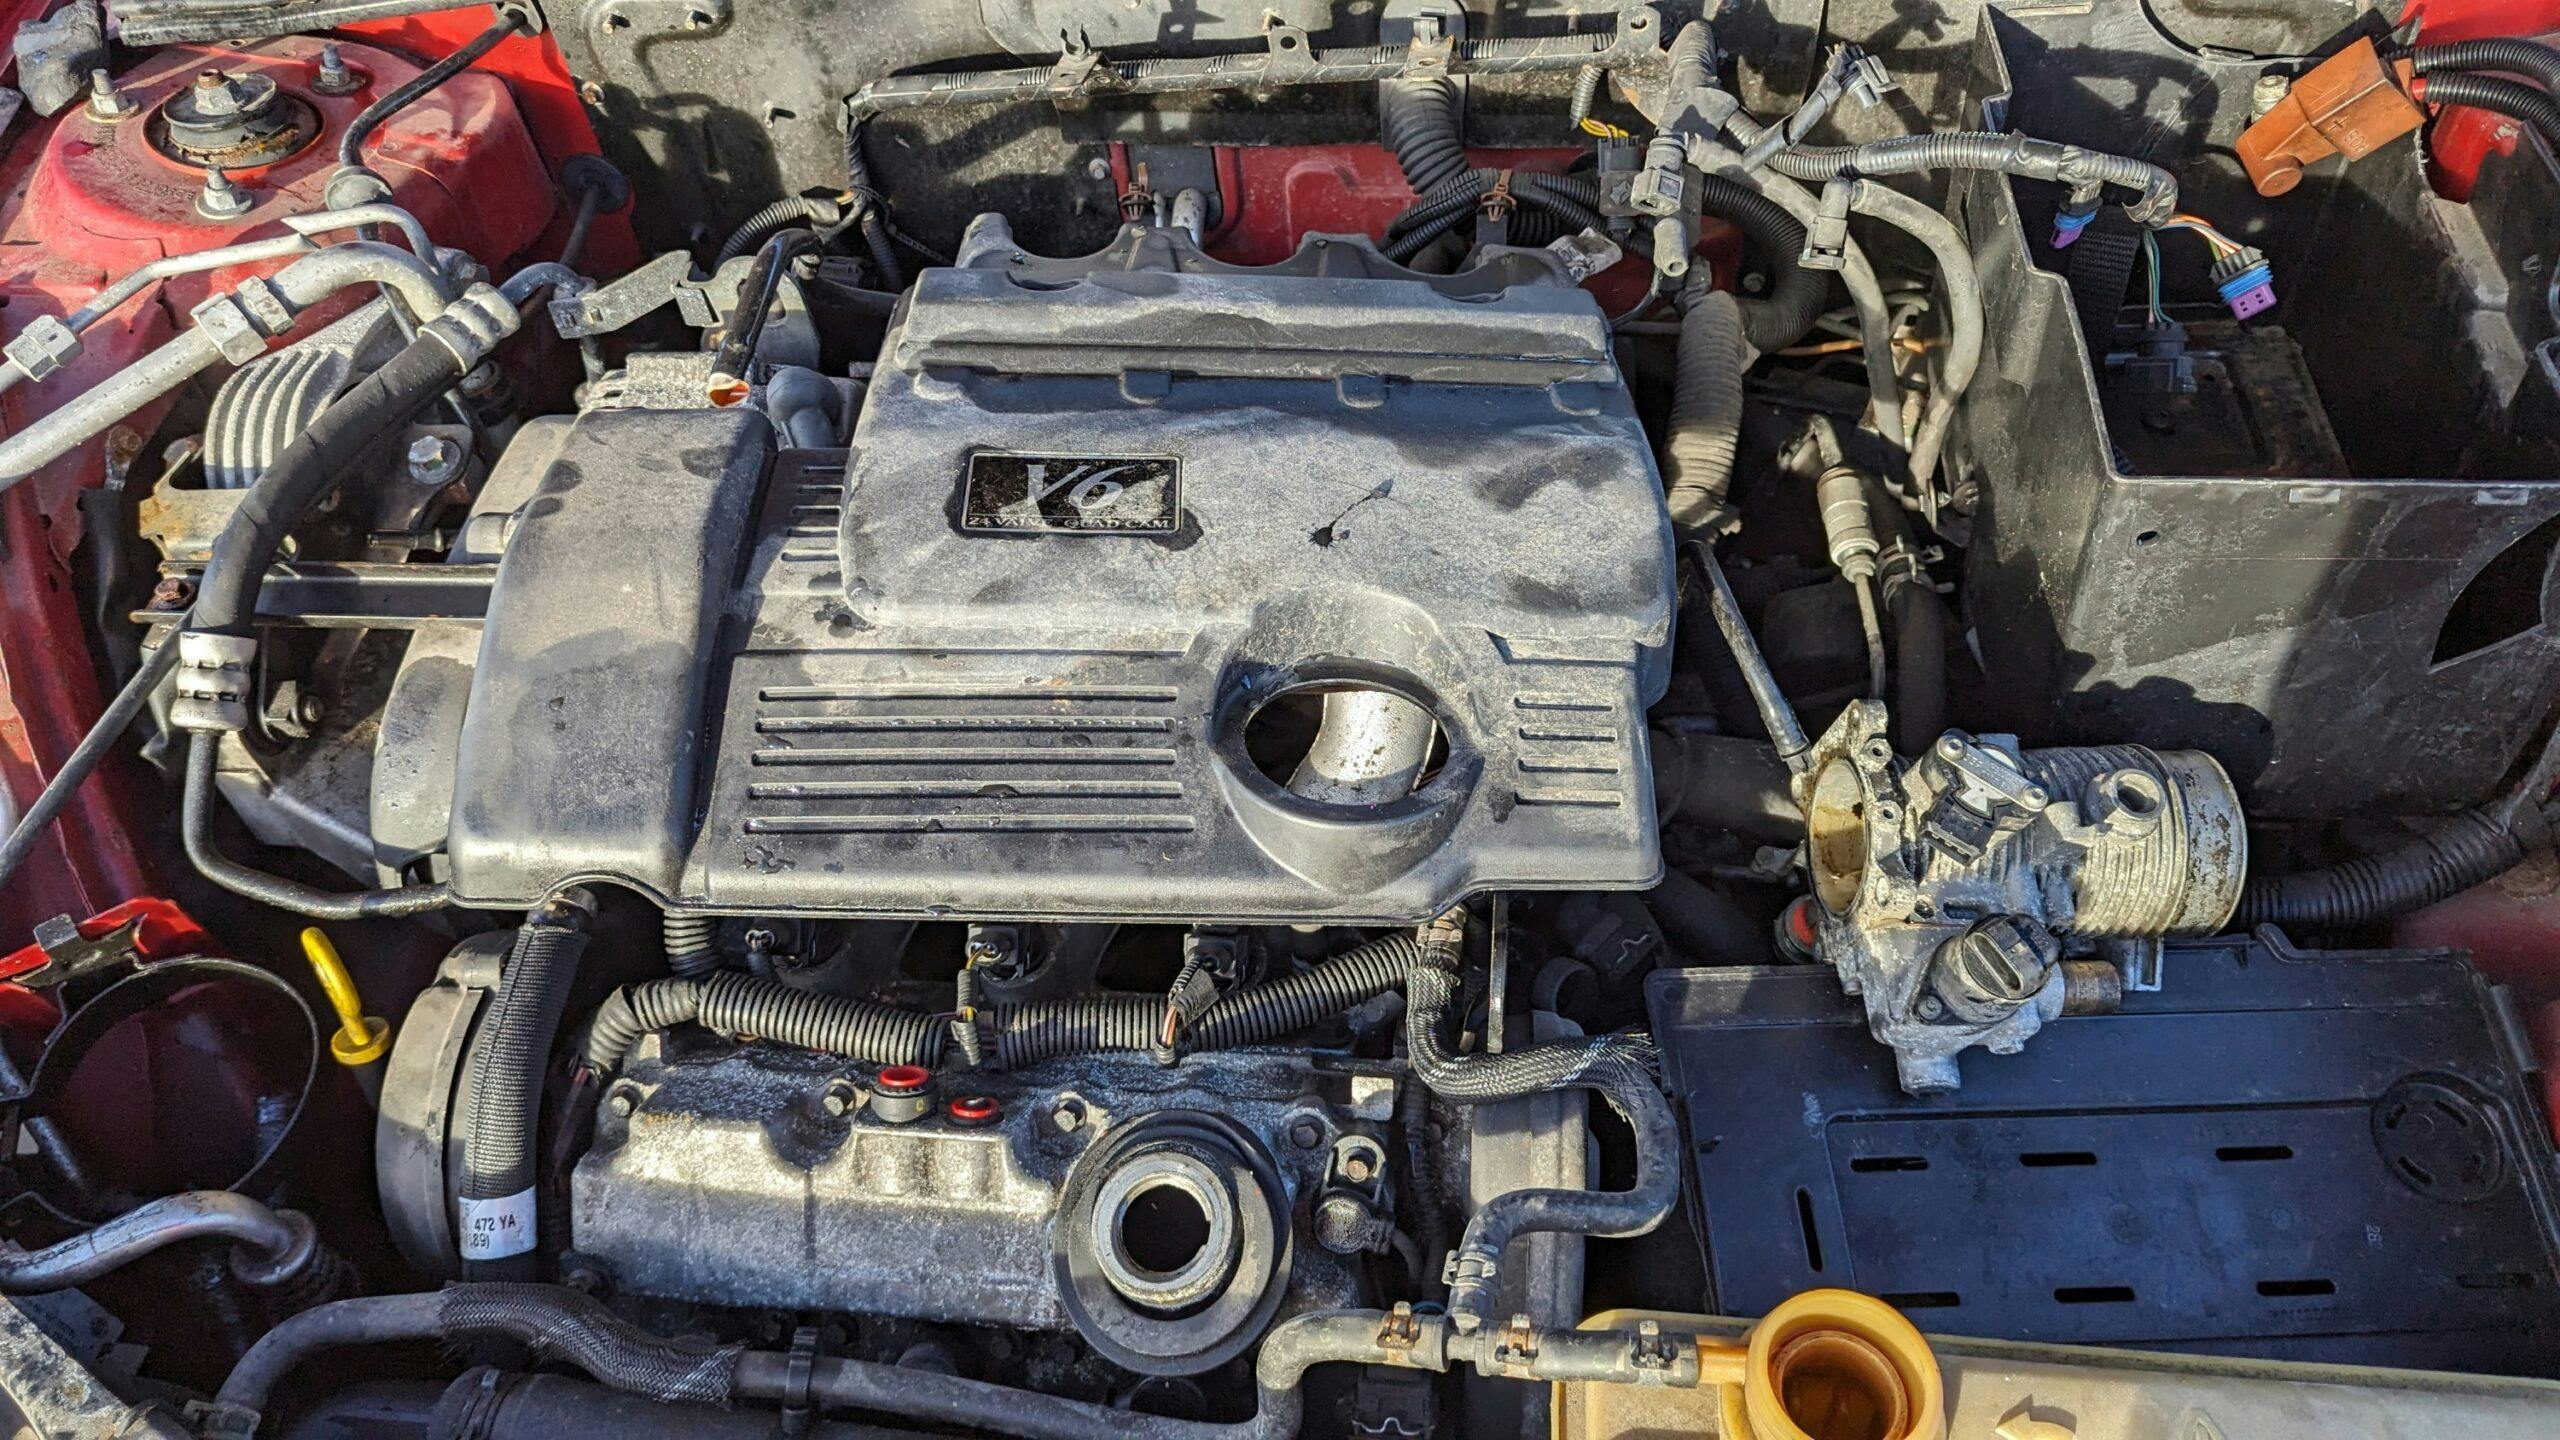 2005 MG ZT 190 engine detail